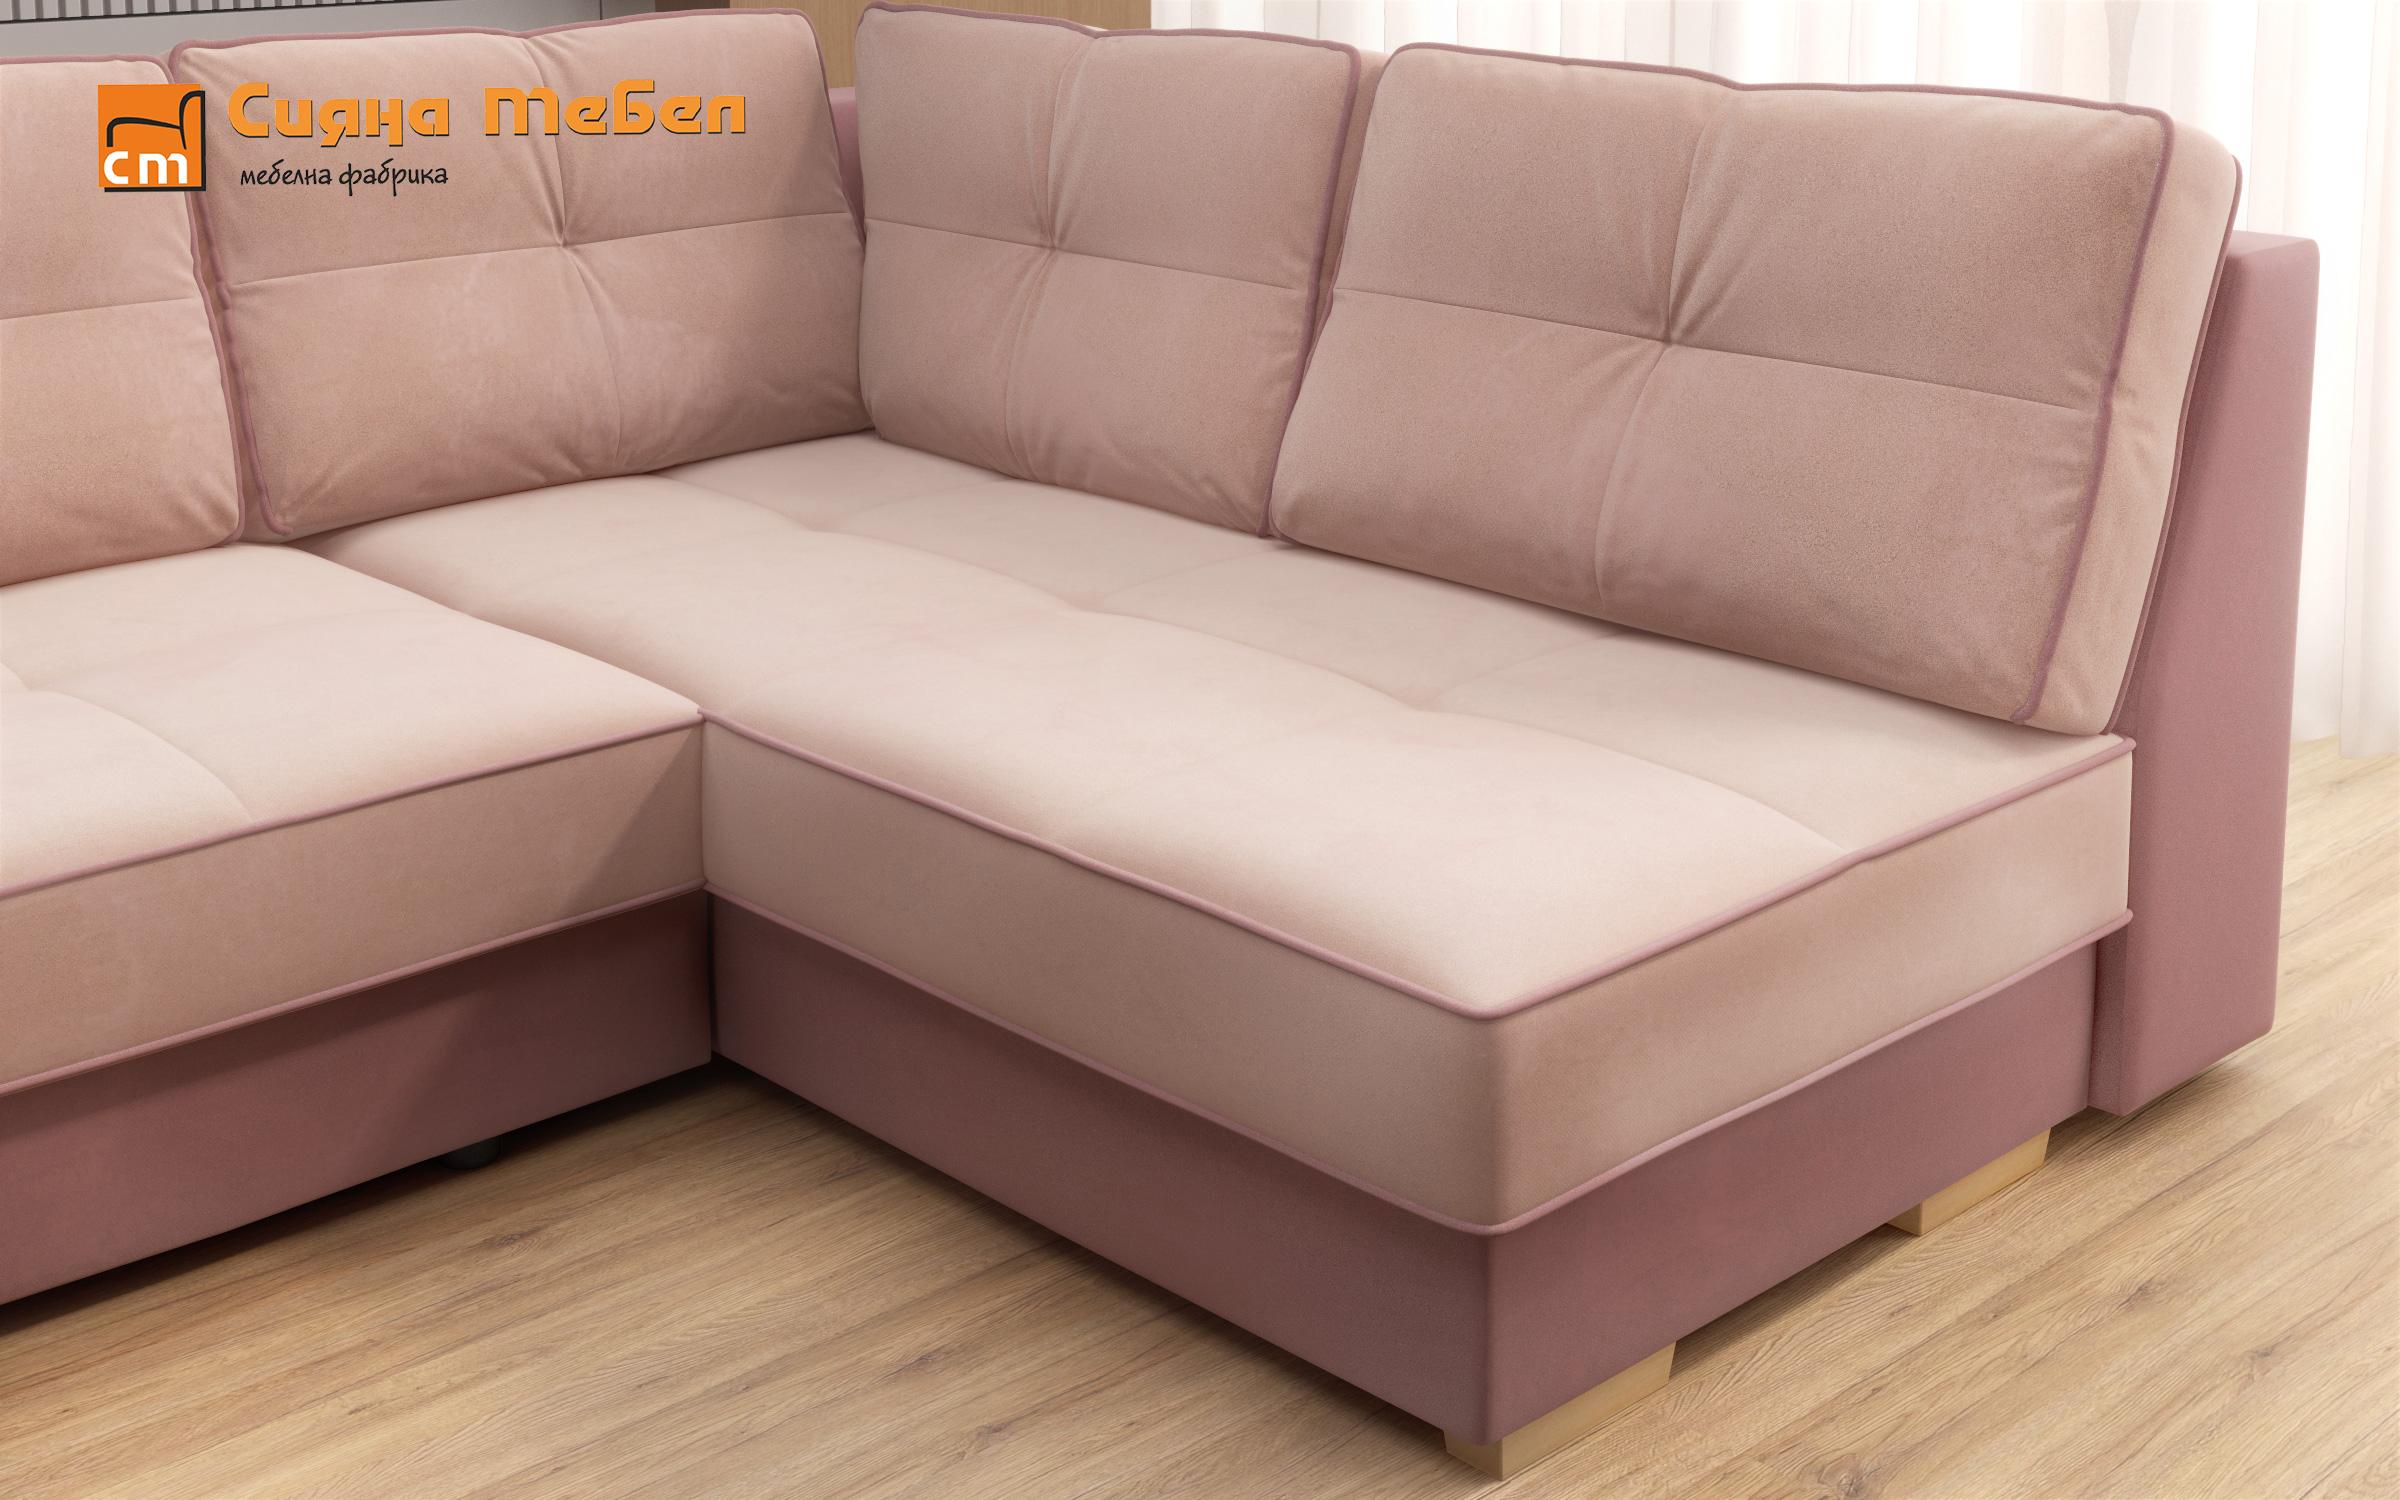 Γωνιακός καναπές Next, ροζ + ανοιχτό ροζ  7